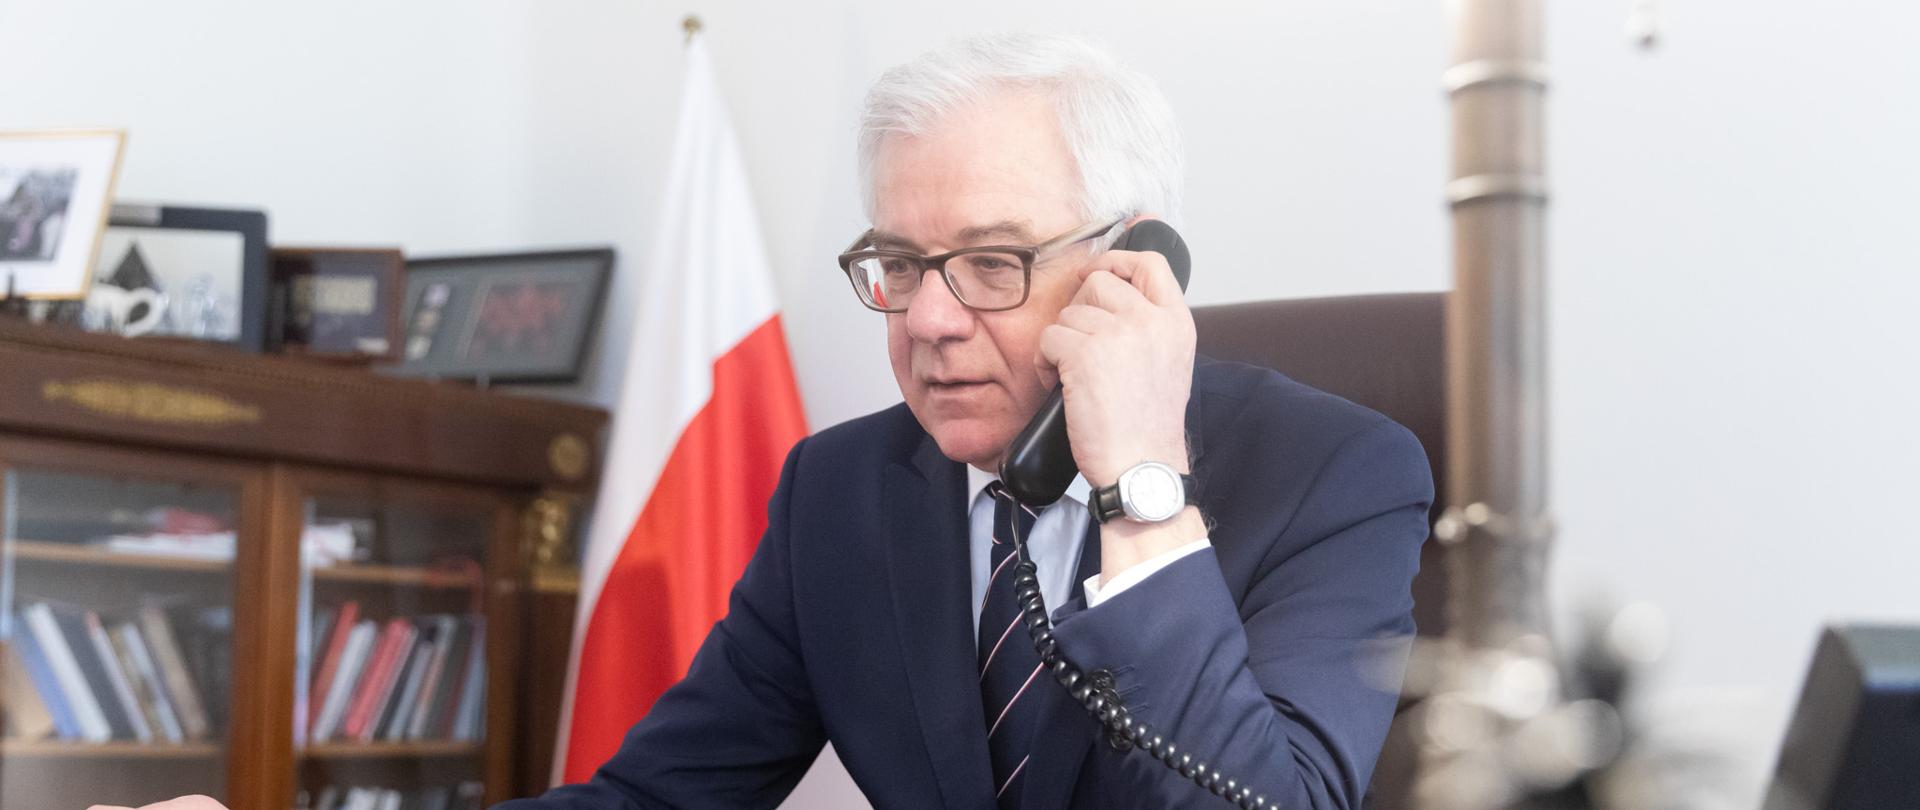 2020.03.18 Warszawa . Minister Jacek Czaputowicz . Rozmowa telefoniczna .
Fot. Tymon Markowski / MSZ